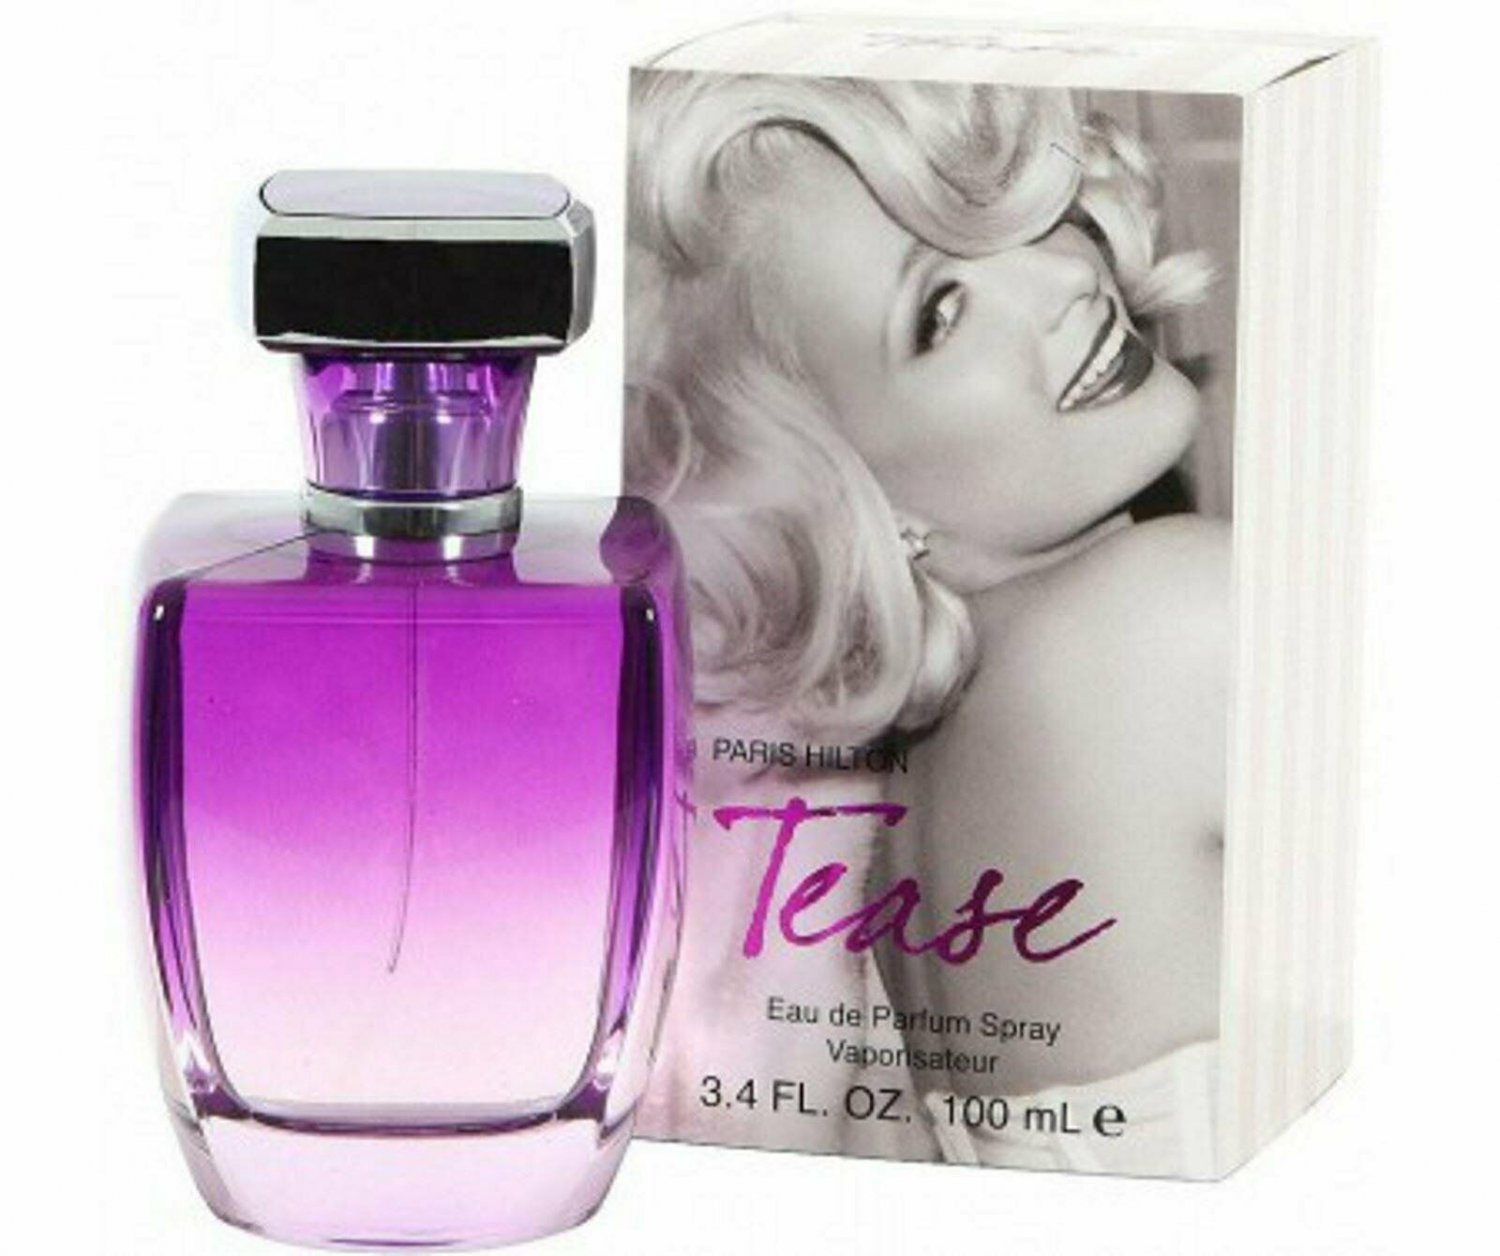 PARIS HILTON TEASE Women 3.4 oz edp Perfume New in Box